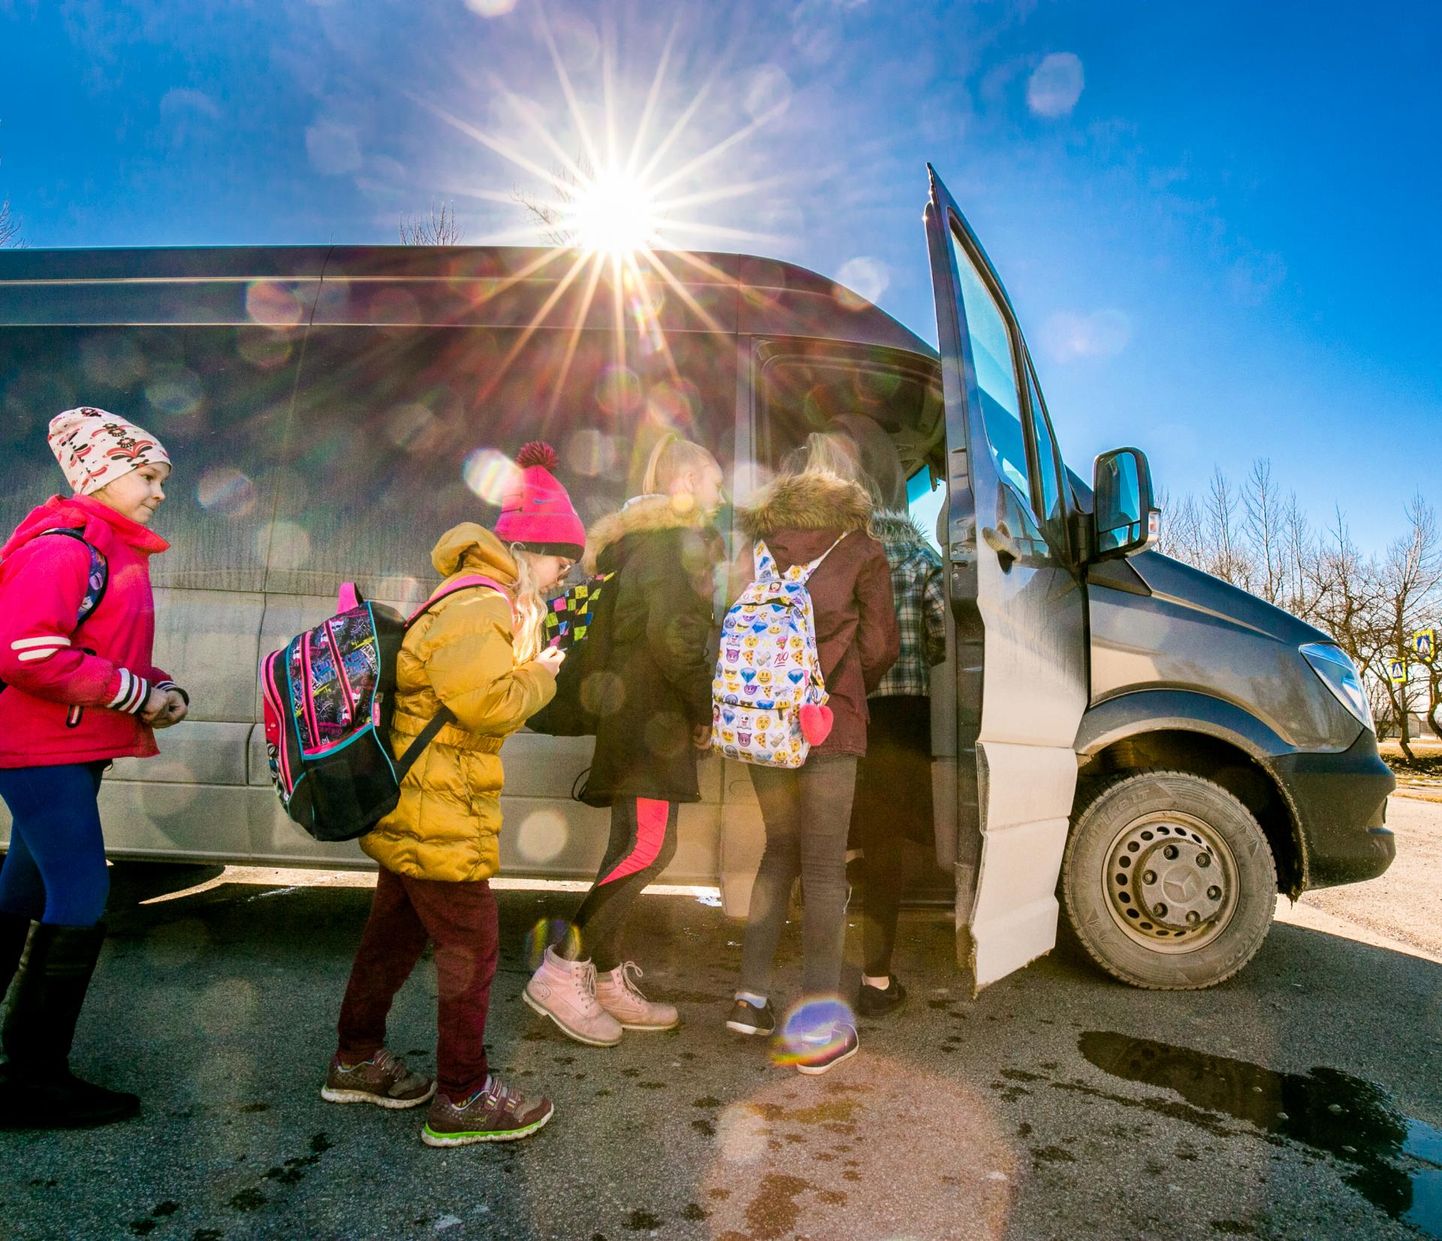 AS Sebe Pärnu osakonna juhataja Rein Laanemetsa väitel ununevad ühissõidukeisse kõige rohkem bussikaardid, õpilaspiletid, laste trenni- või koolikotid ning külmal ajal ka kindad ja mütsid.